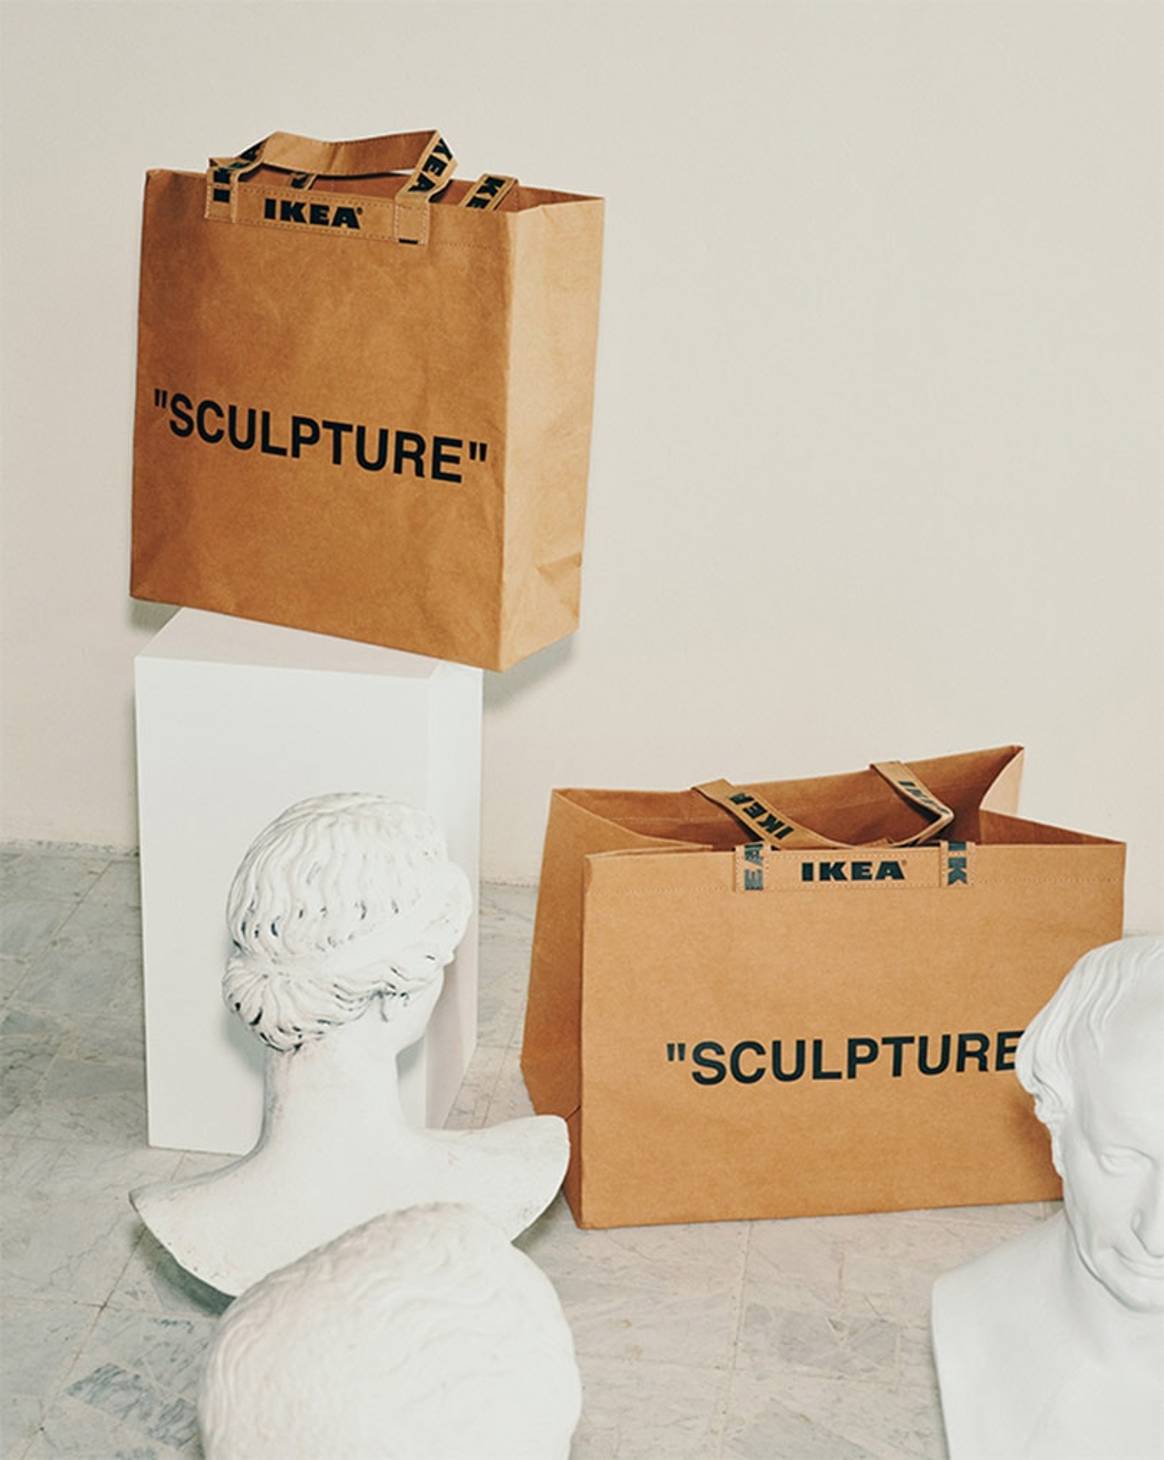 Креативный директор Louis Vuitton представил полную коллекцию для Ikea